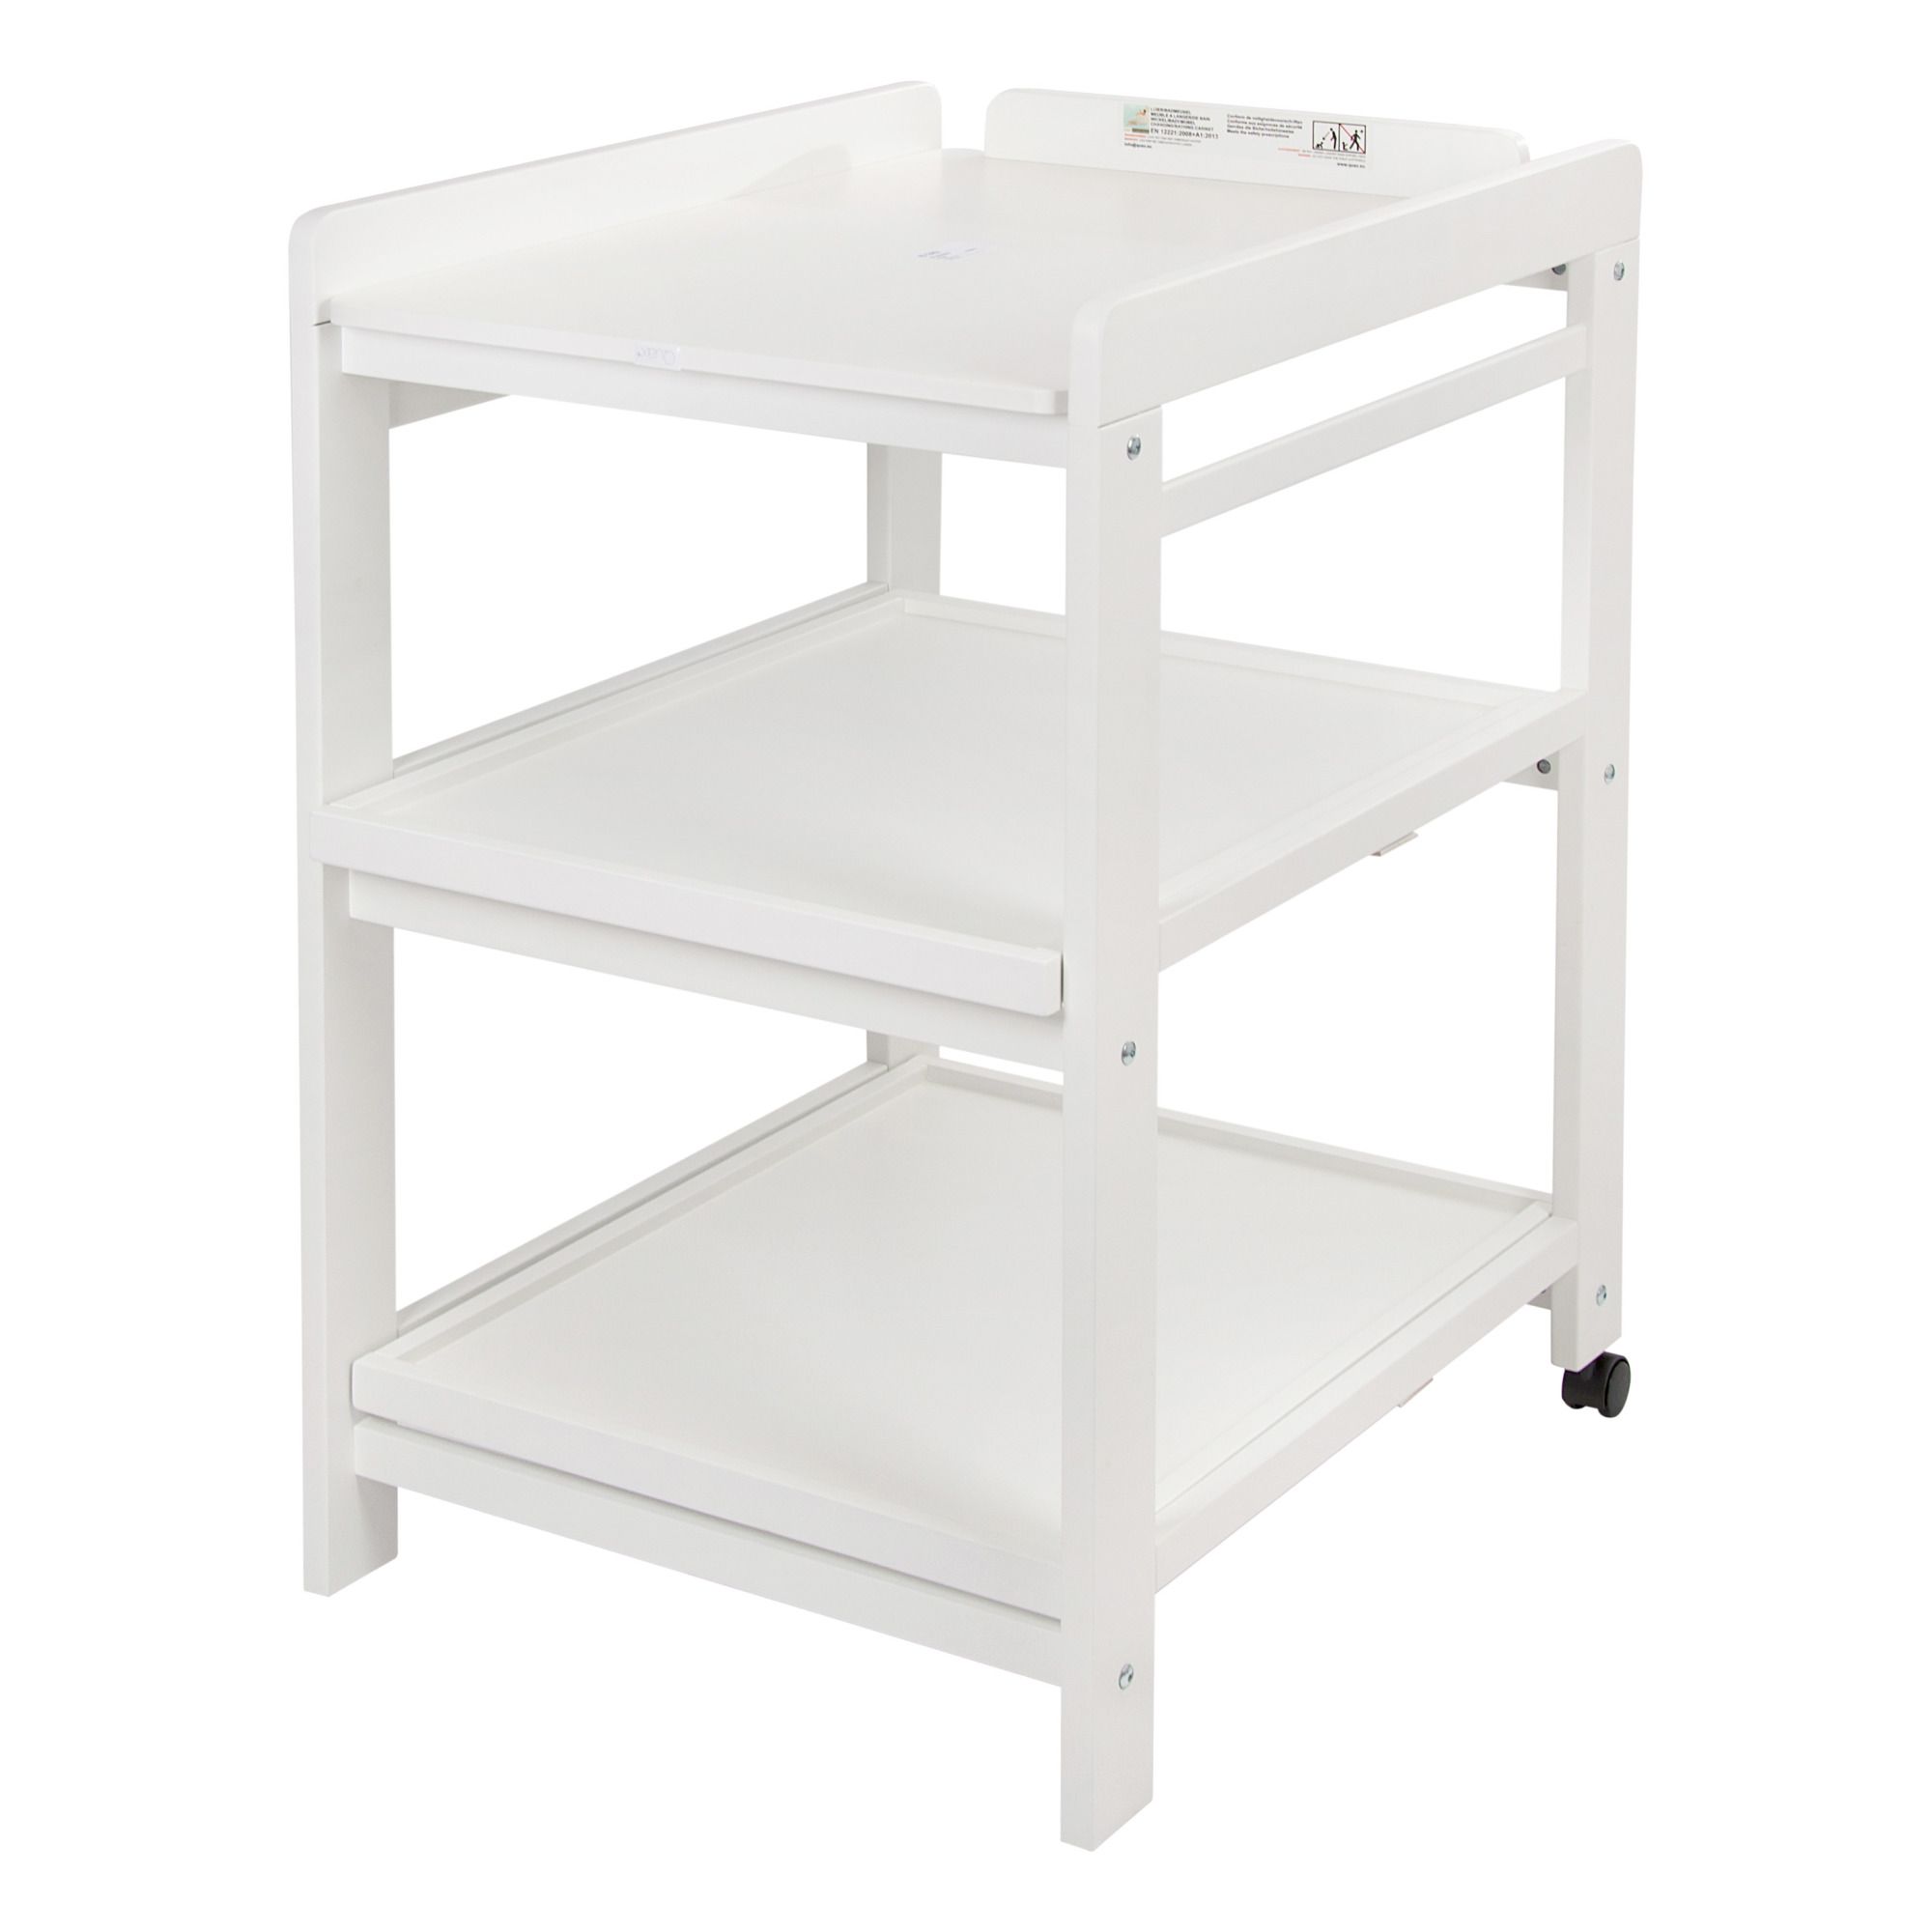 Quax - Table à langer Comfort - étagères extractibles - Blanc